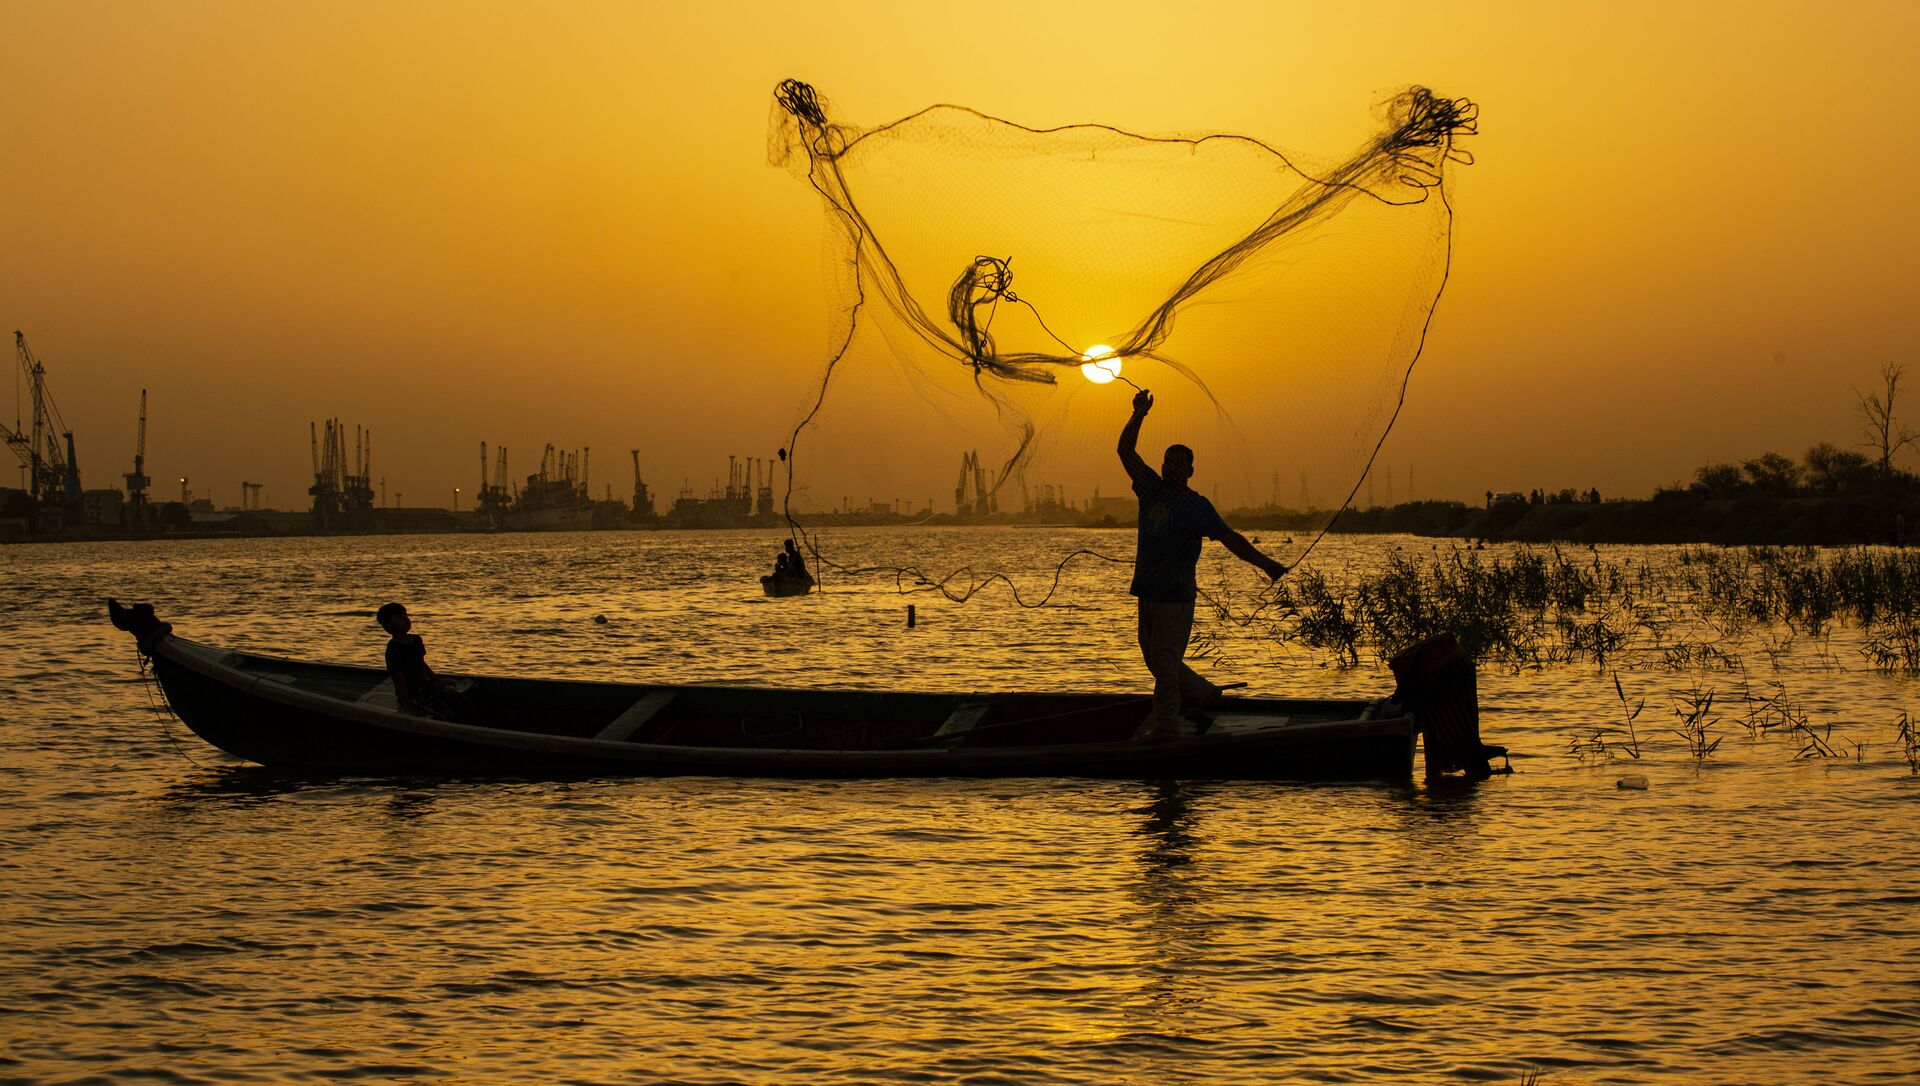  Рыбак закидывает сеть на закате на реке Шатт-эль-Араб в иракском городе Басра - Sputnik Азербайджан, 1920, 06.09.2021